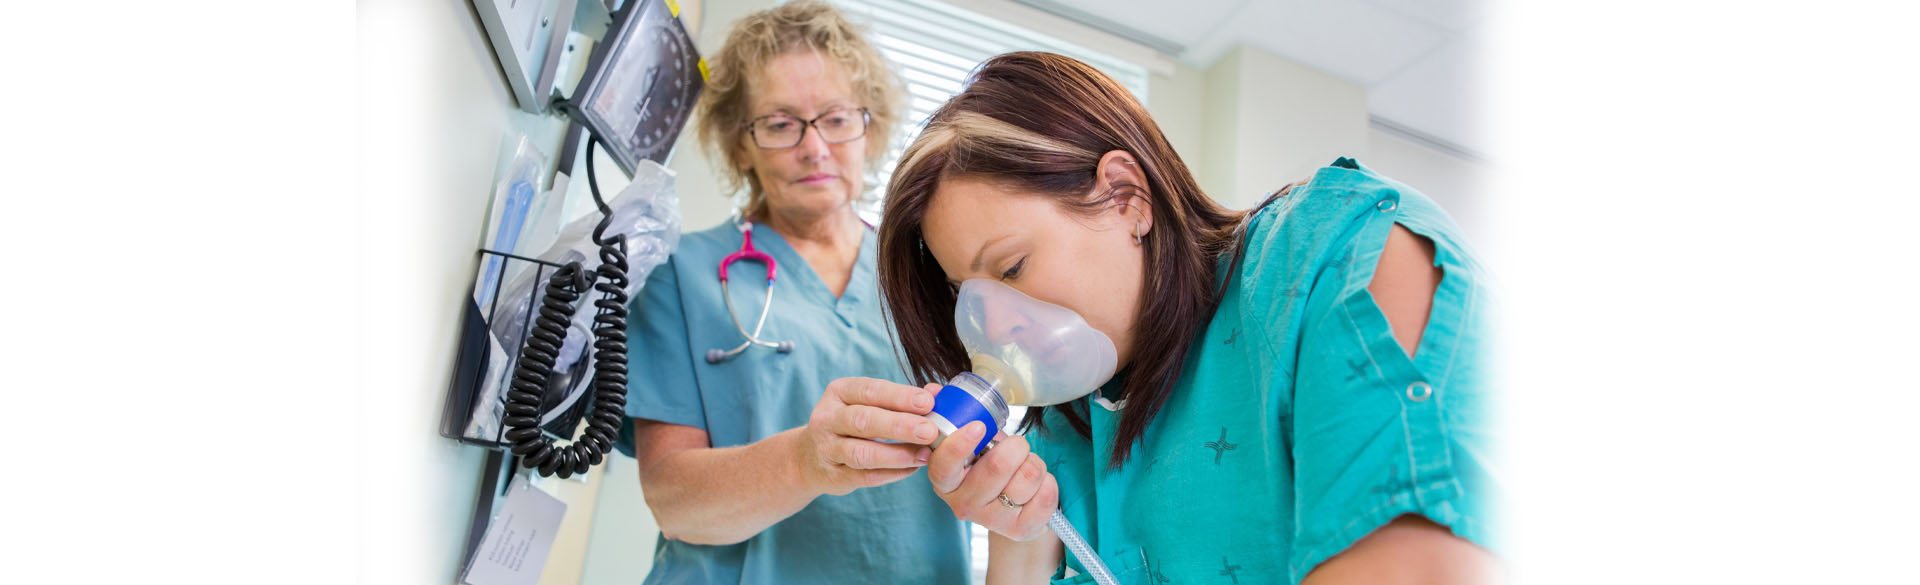 Nurse with patient using nitrous oxide